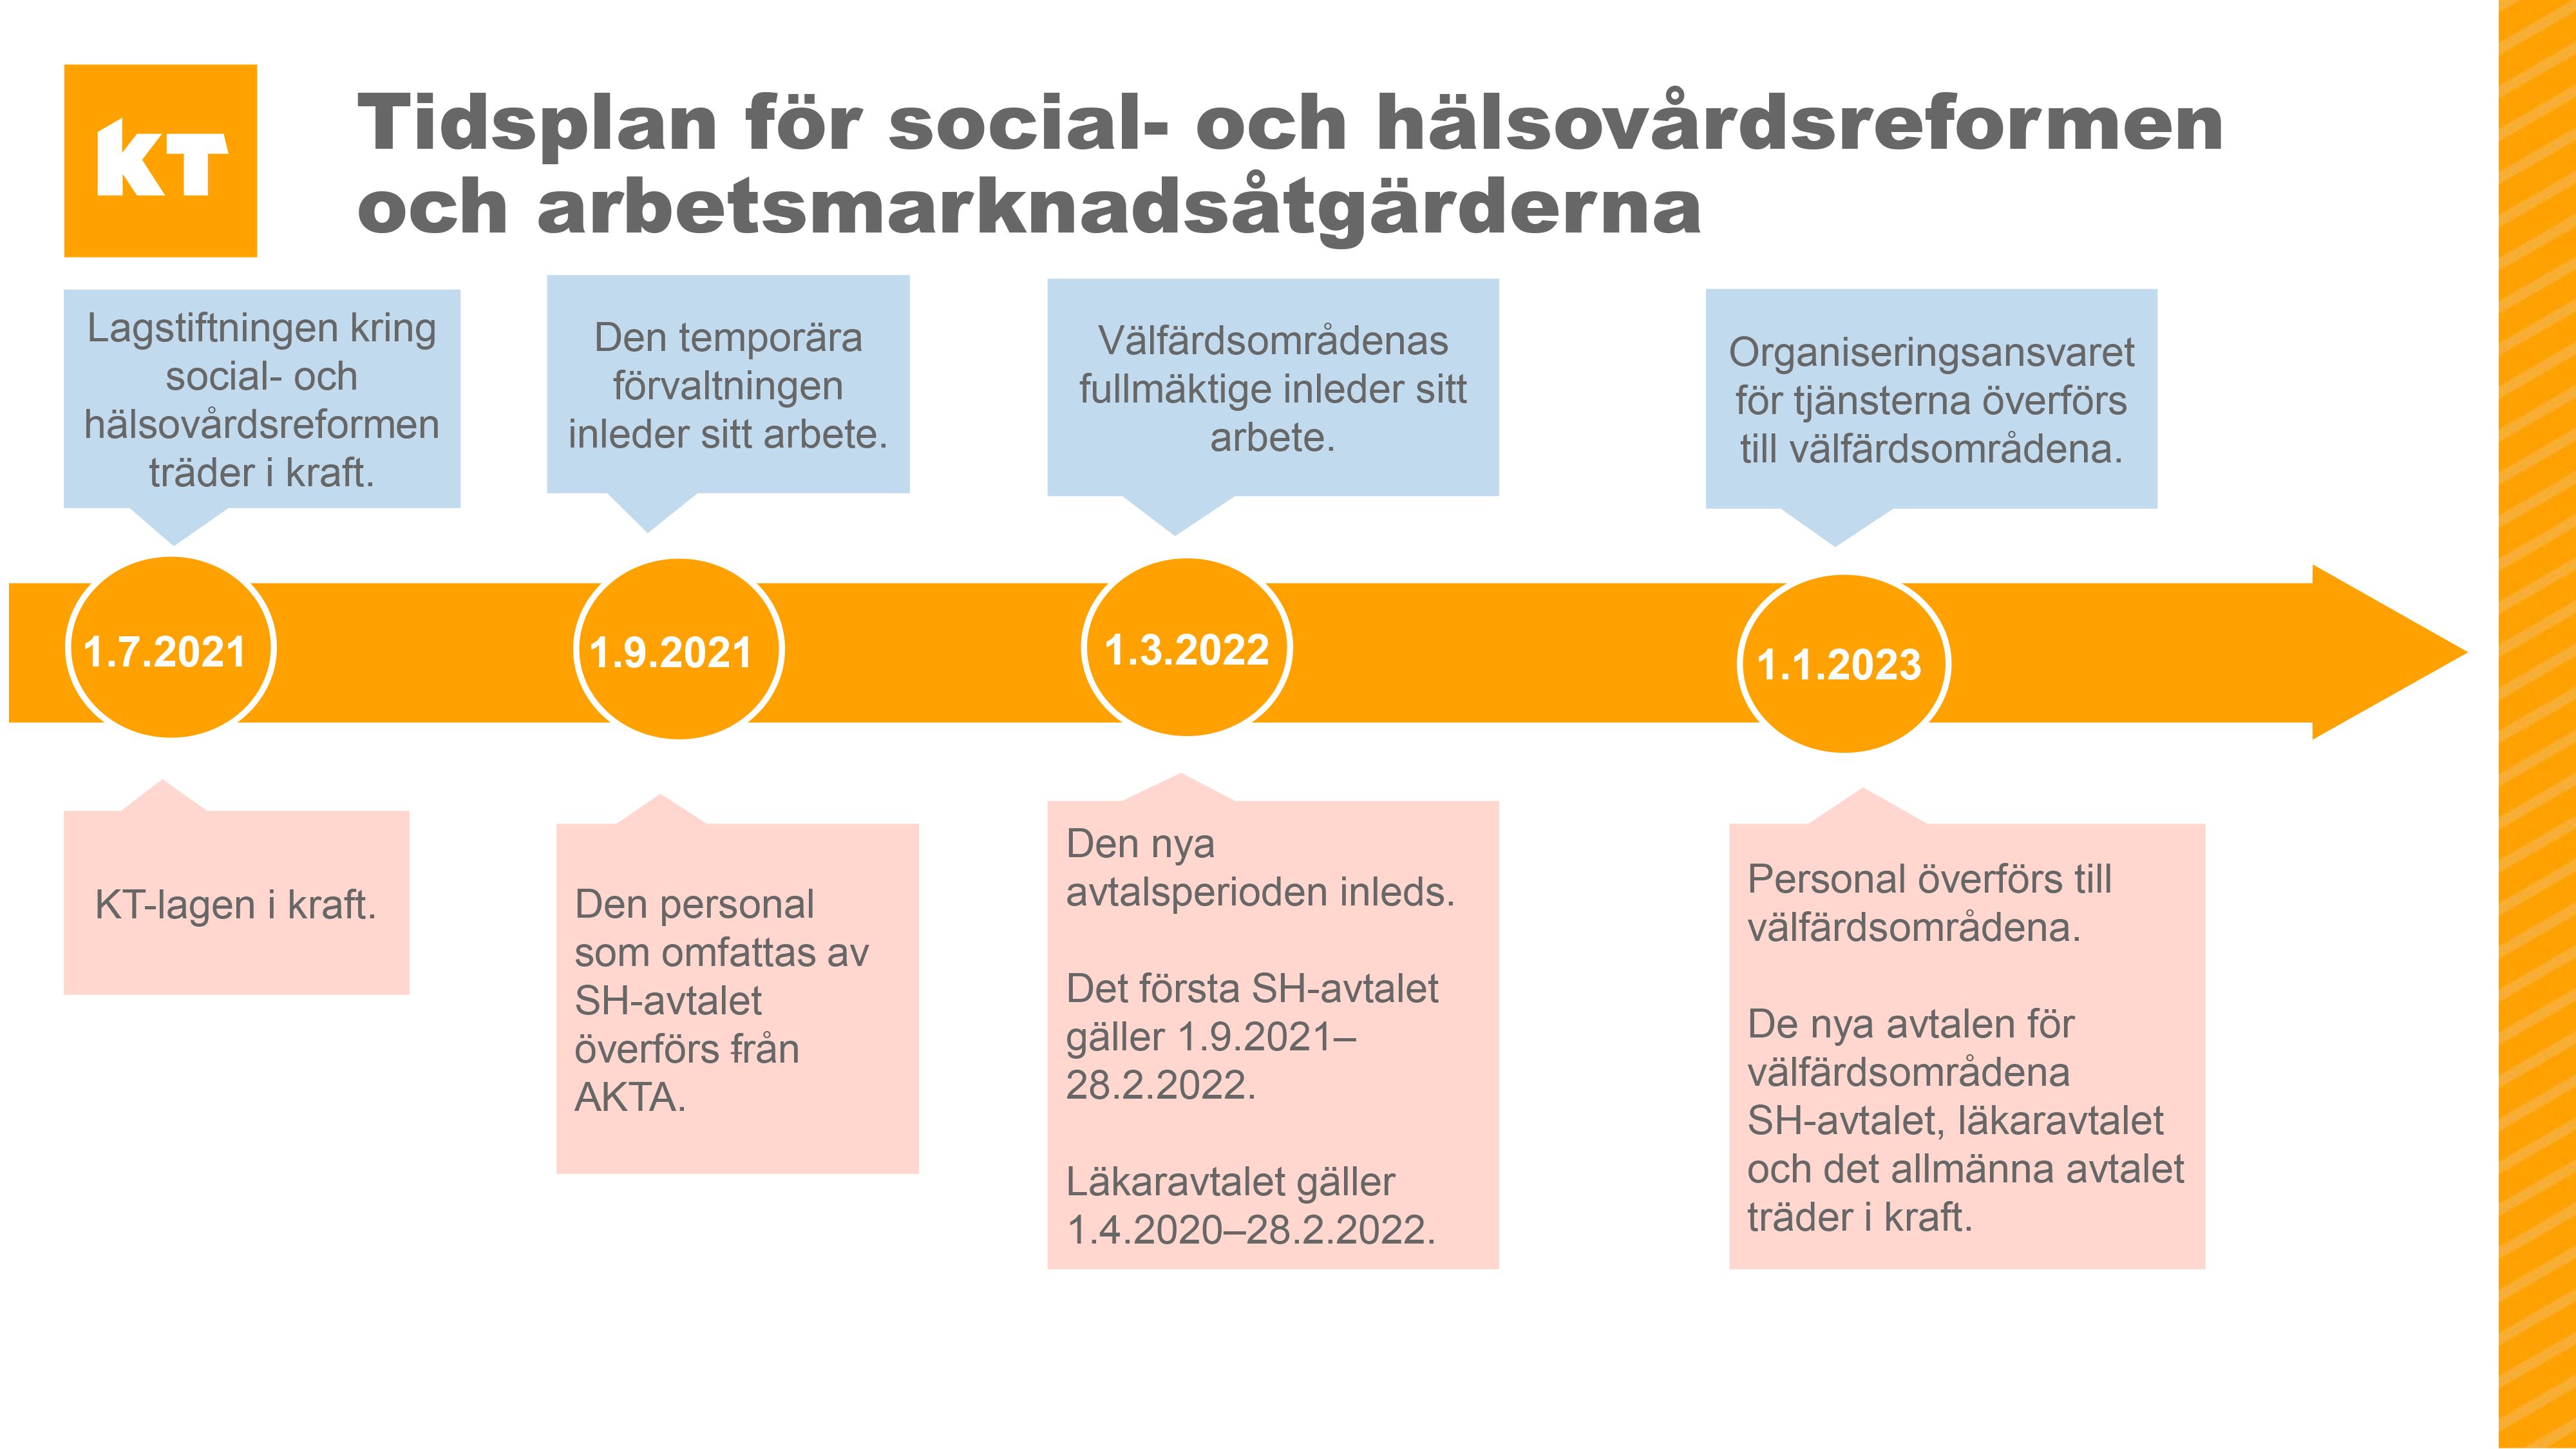 Tidsplan för social- och hälsovårdsreformen och arbetsmarknadsåtgärderna.